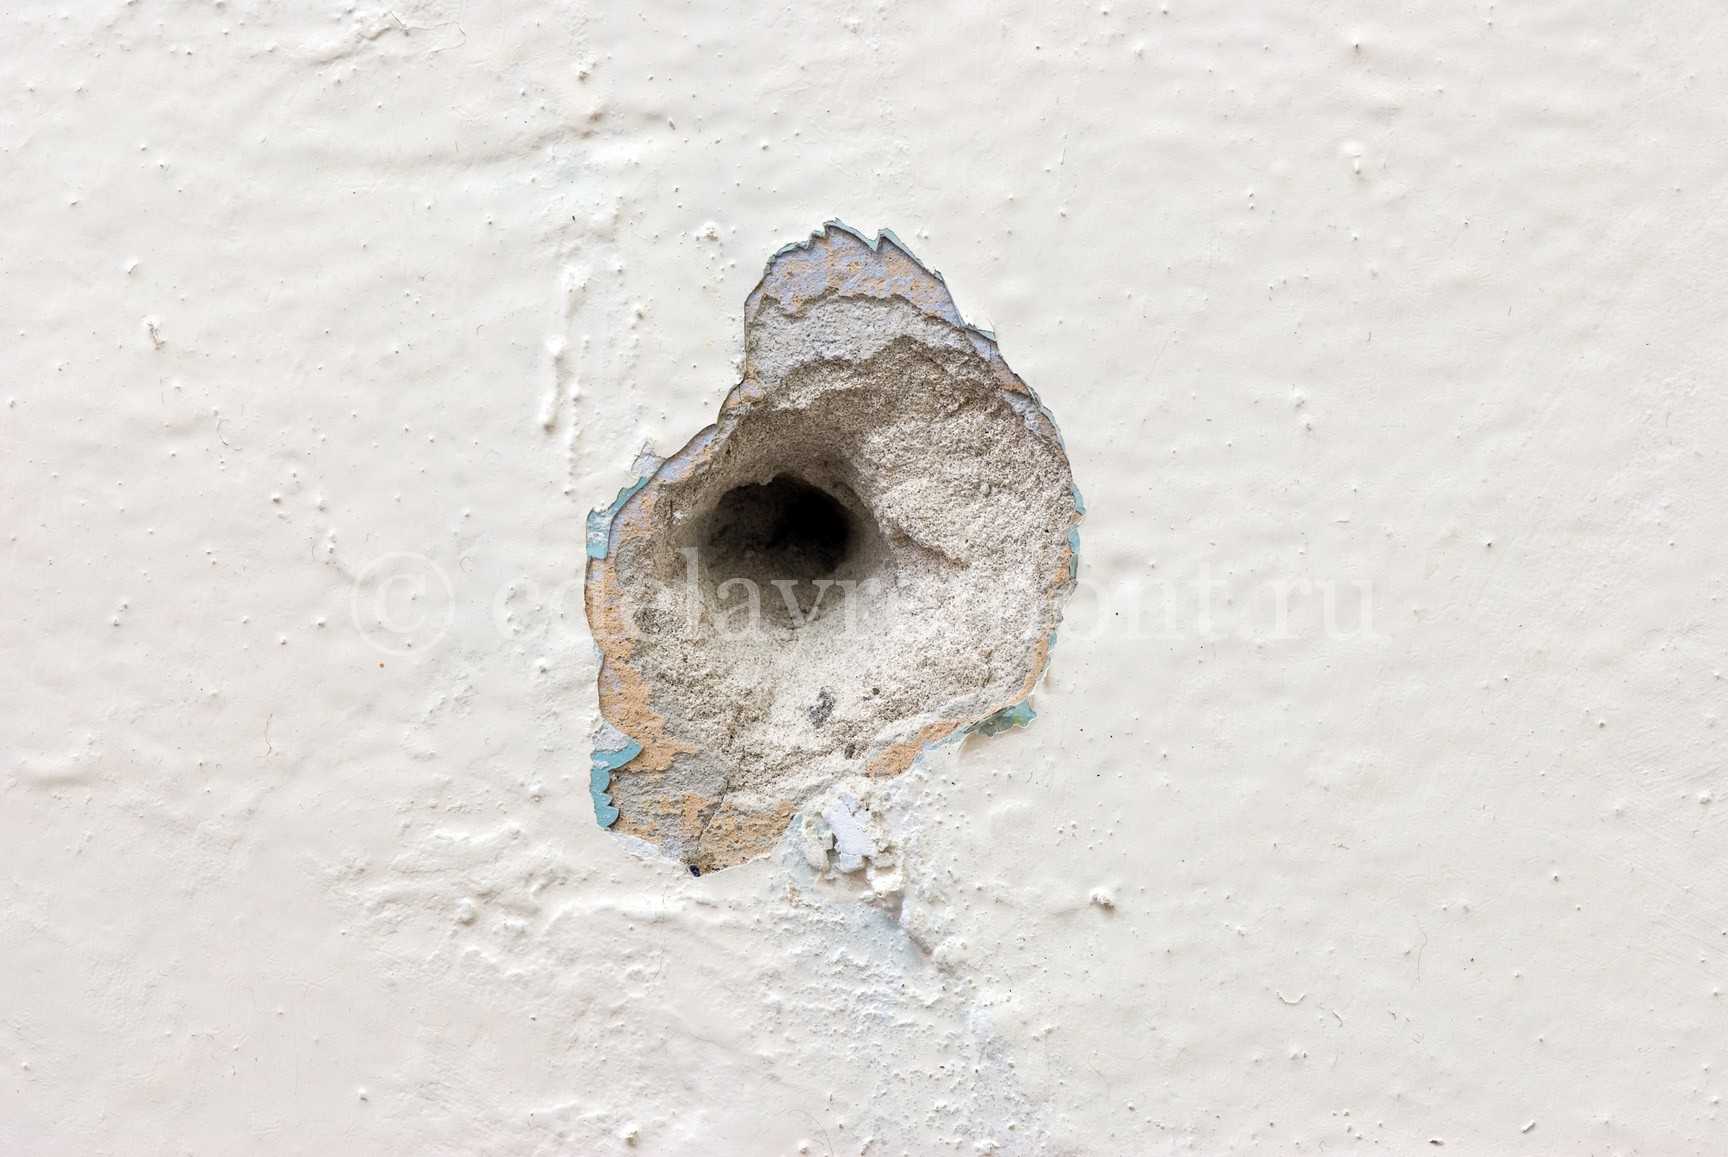 Нашла странную дыру в стене. Дырка в стене. Стена с пулевыми отверстиями. Пулевое отверстие в бетоне. Дыра в бетонной стене.